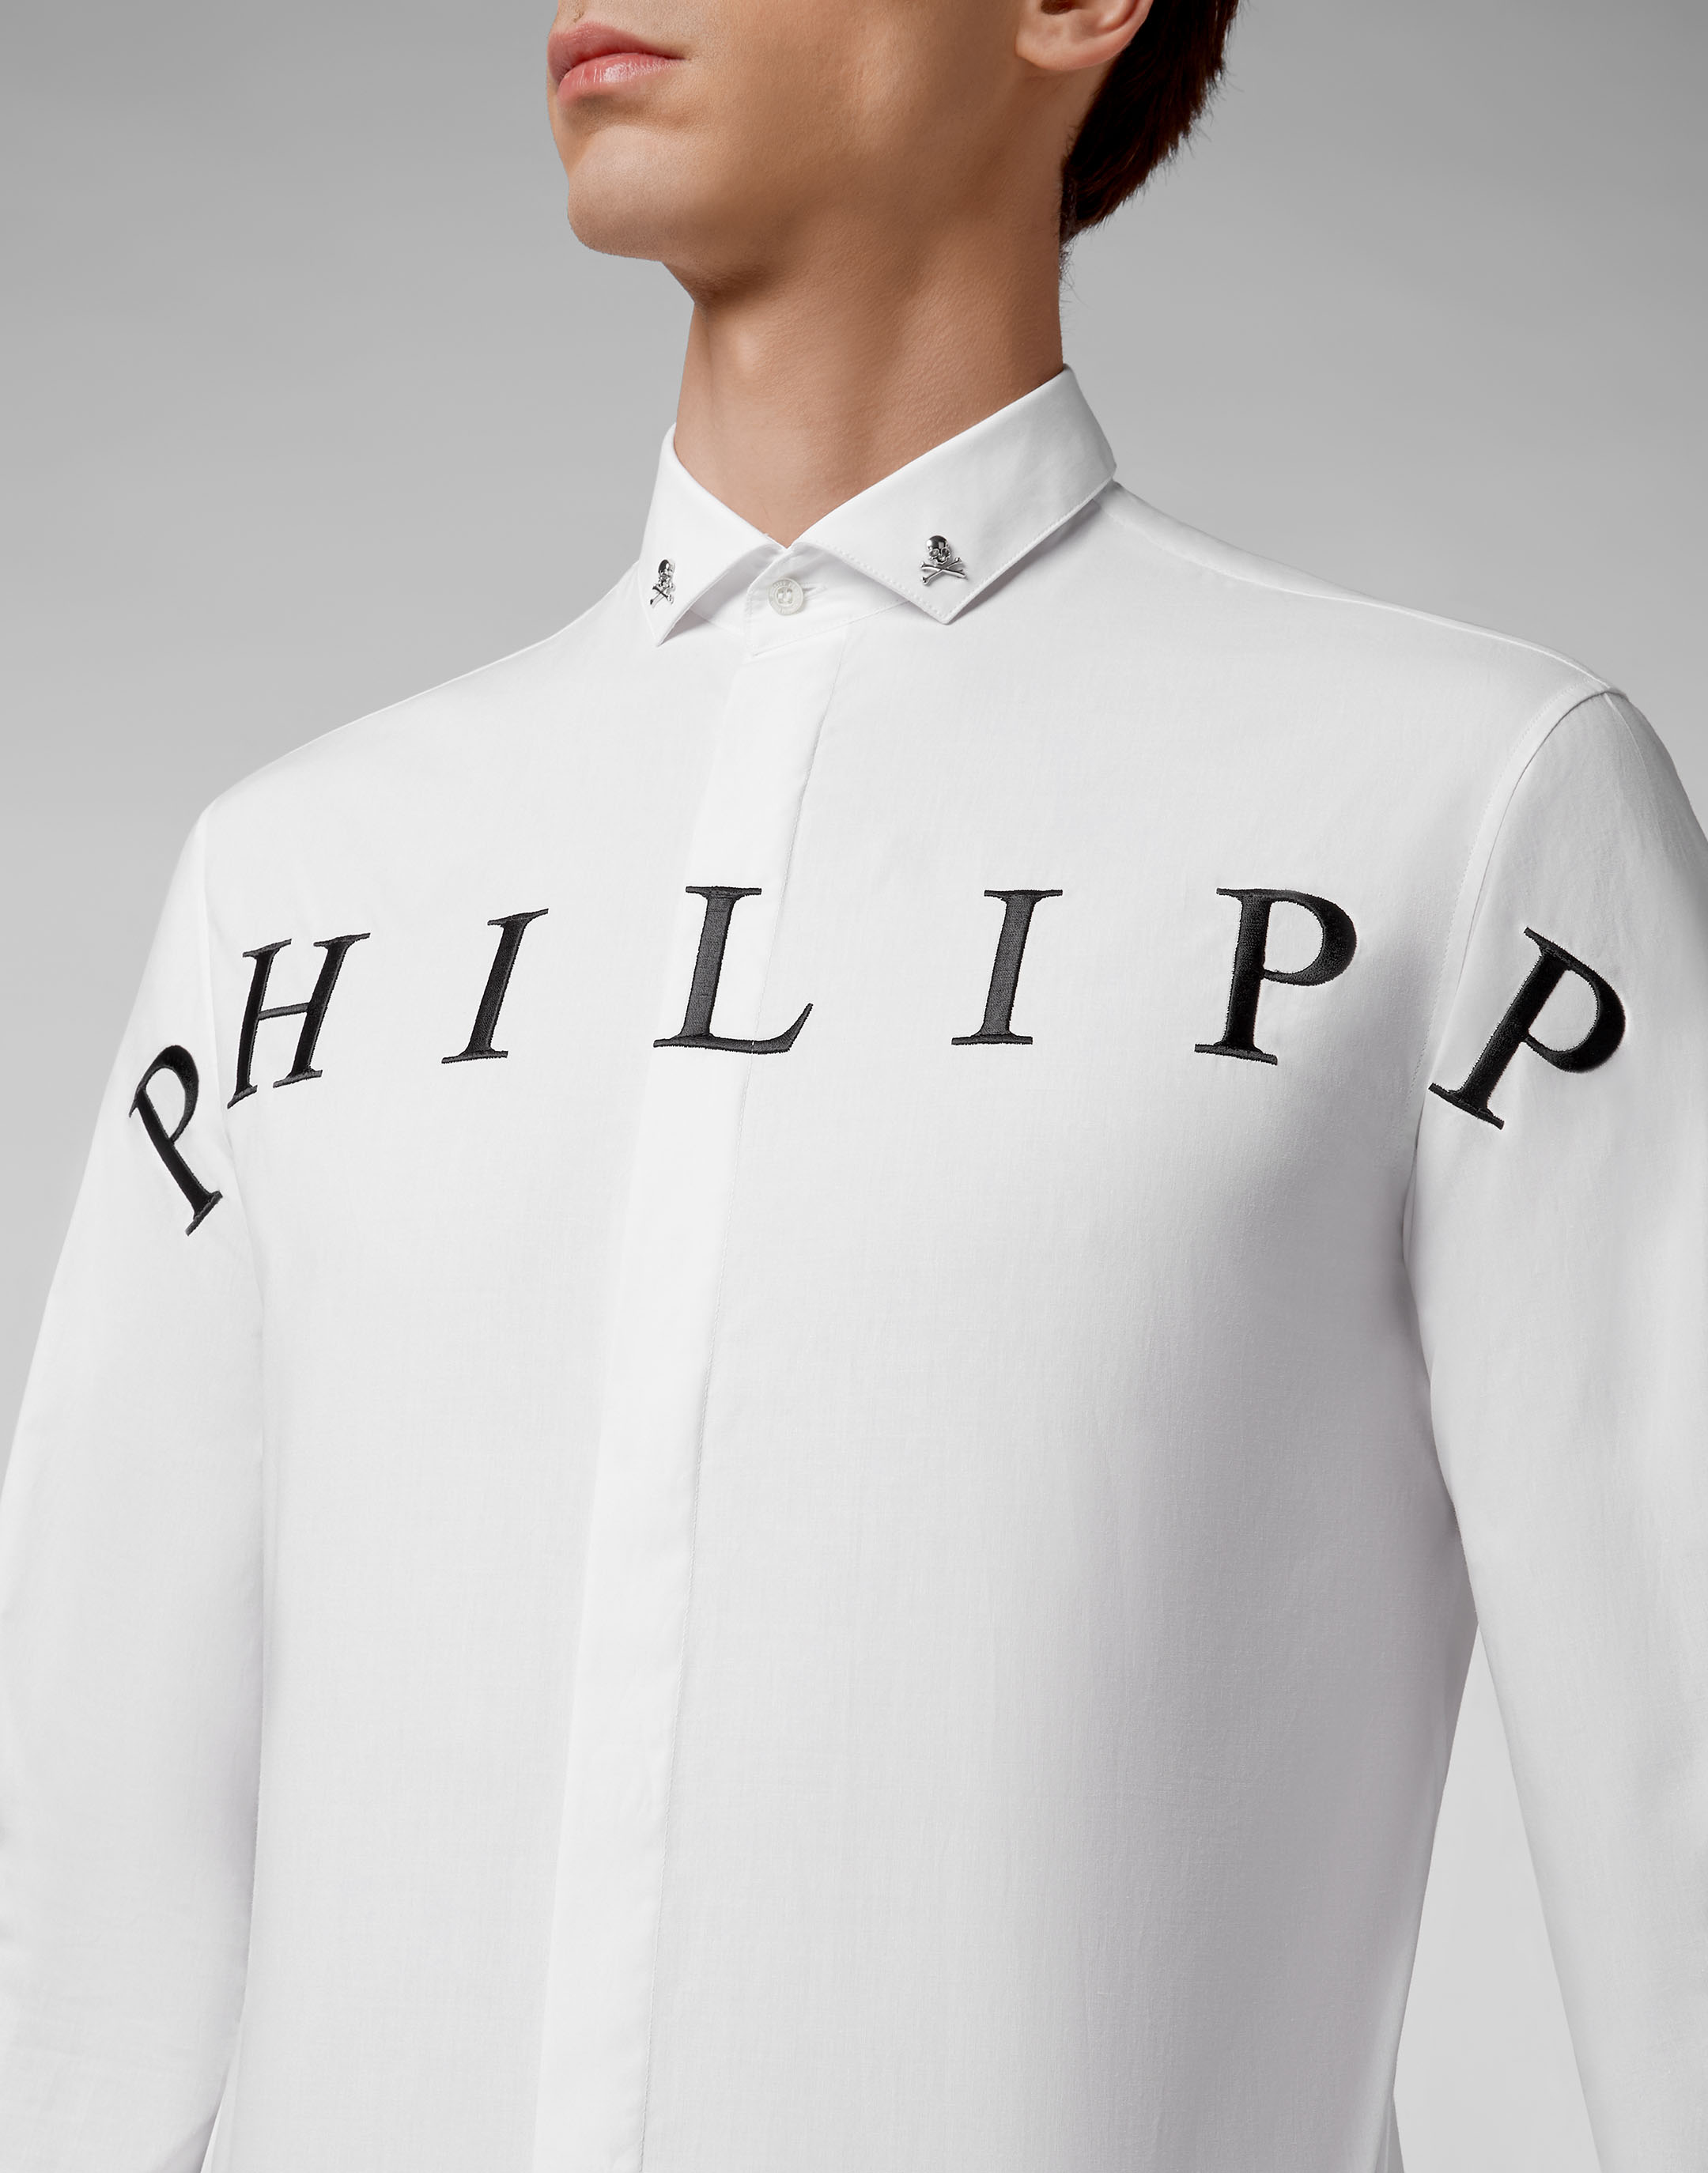 philipp plein t shirt diamond